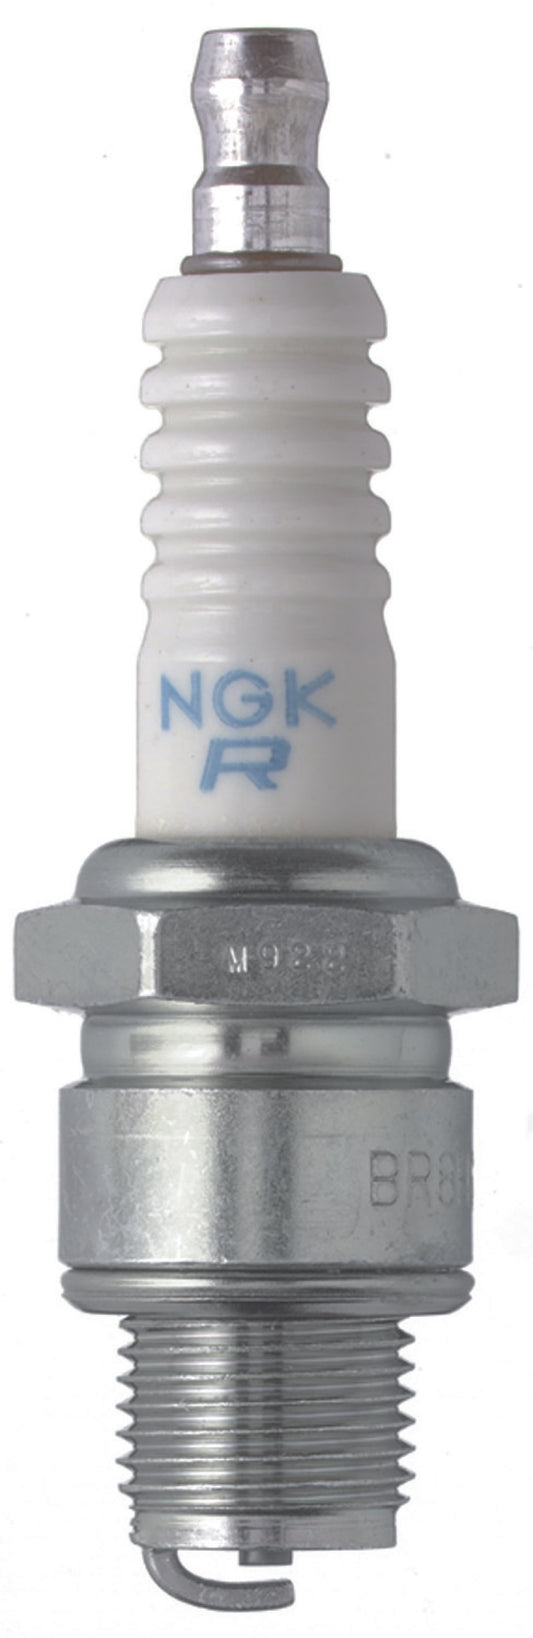 NGK Standard Spark Plug Box of 10 (BR9HS)